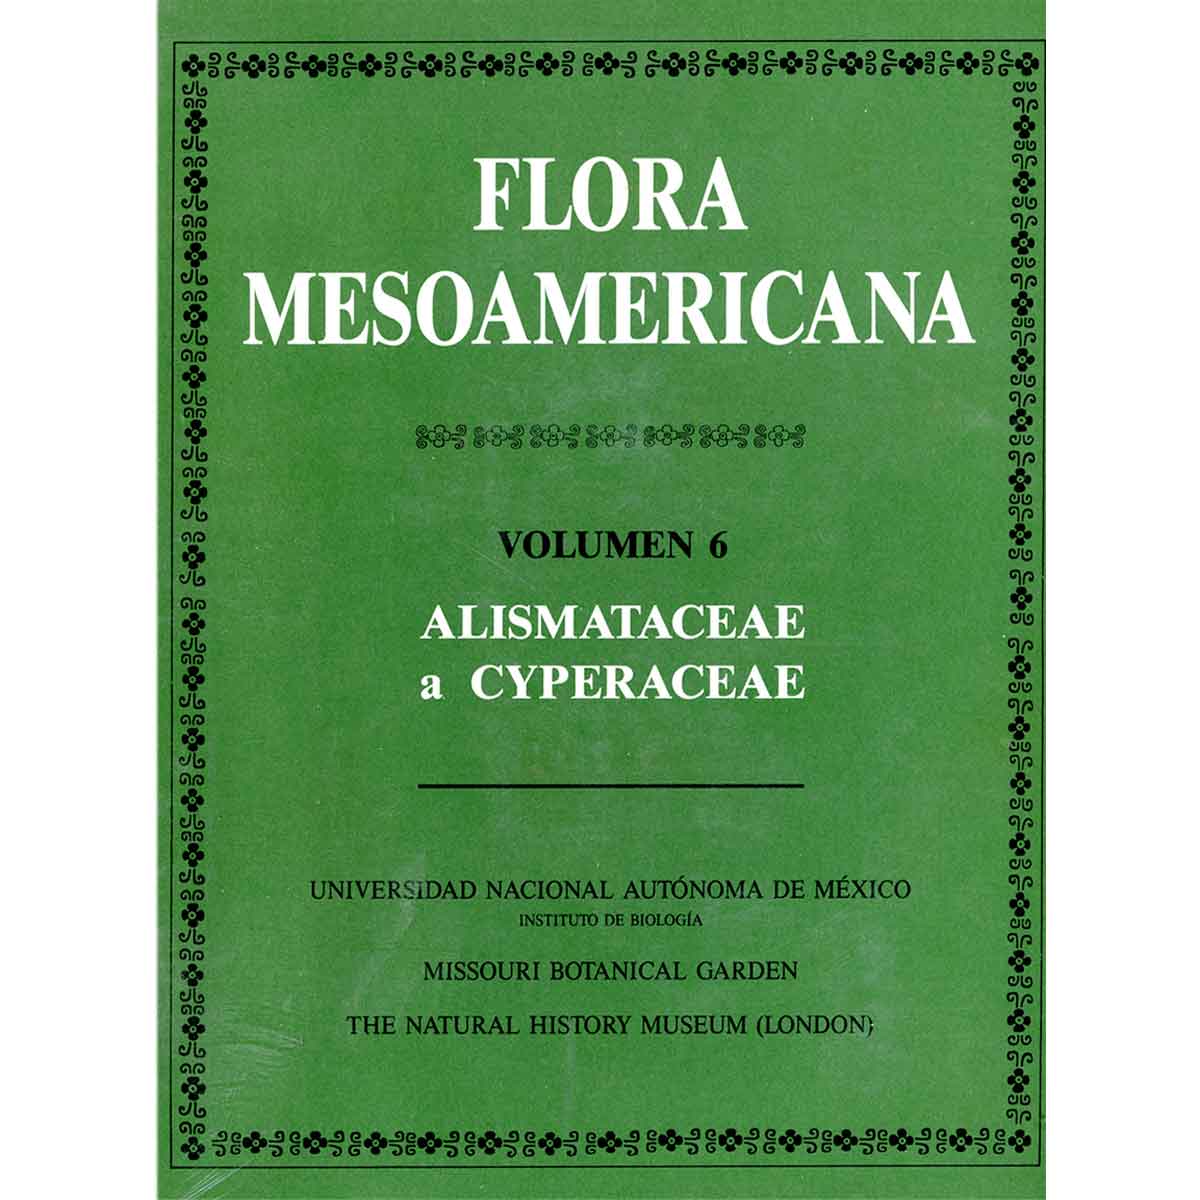 FLORA MESOAMERICANA. VOL. 6. ALISMATACEAE A CYPERACEAE